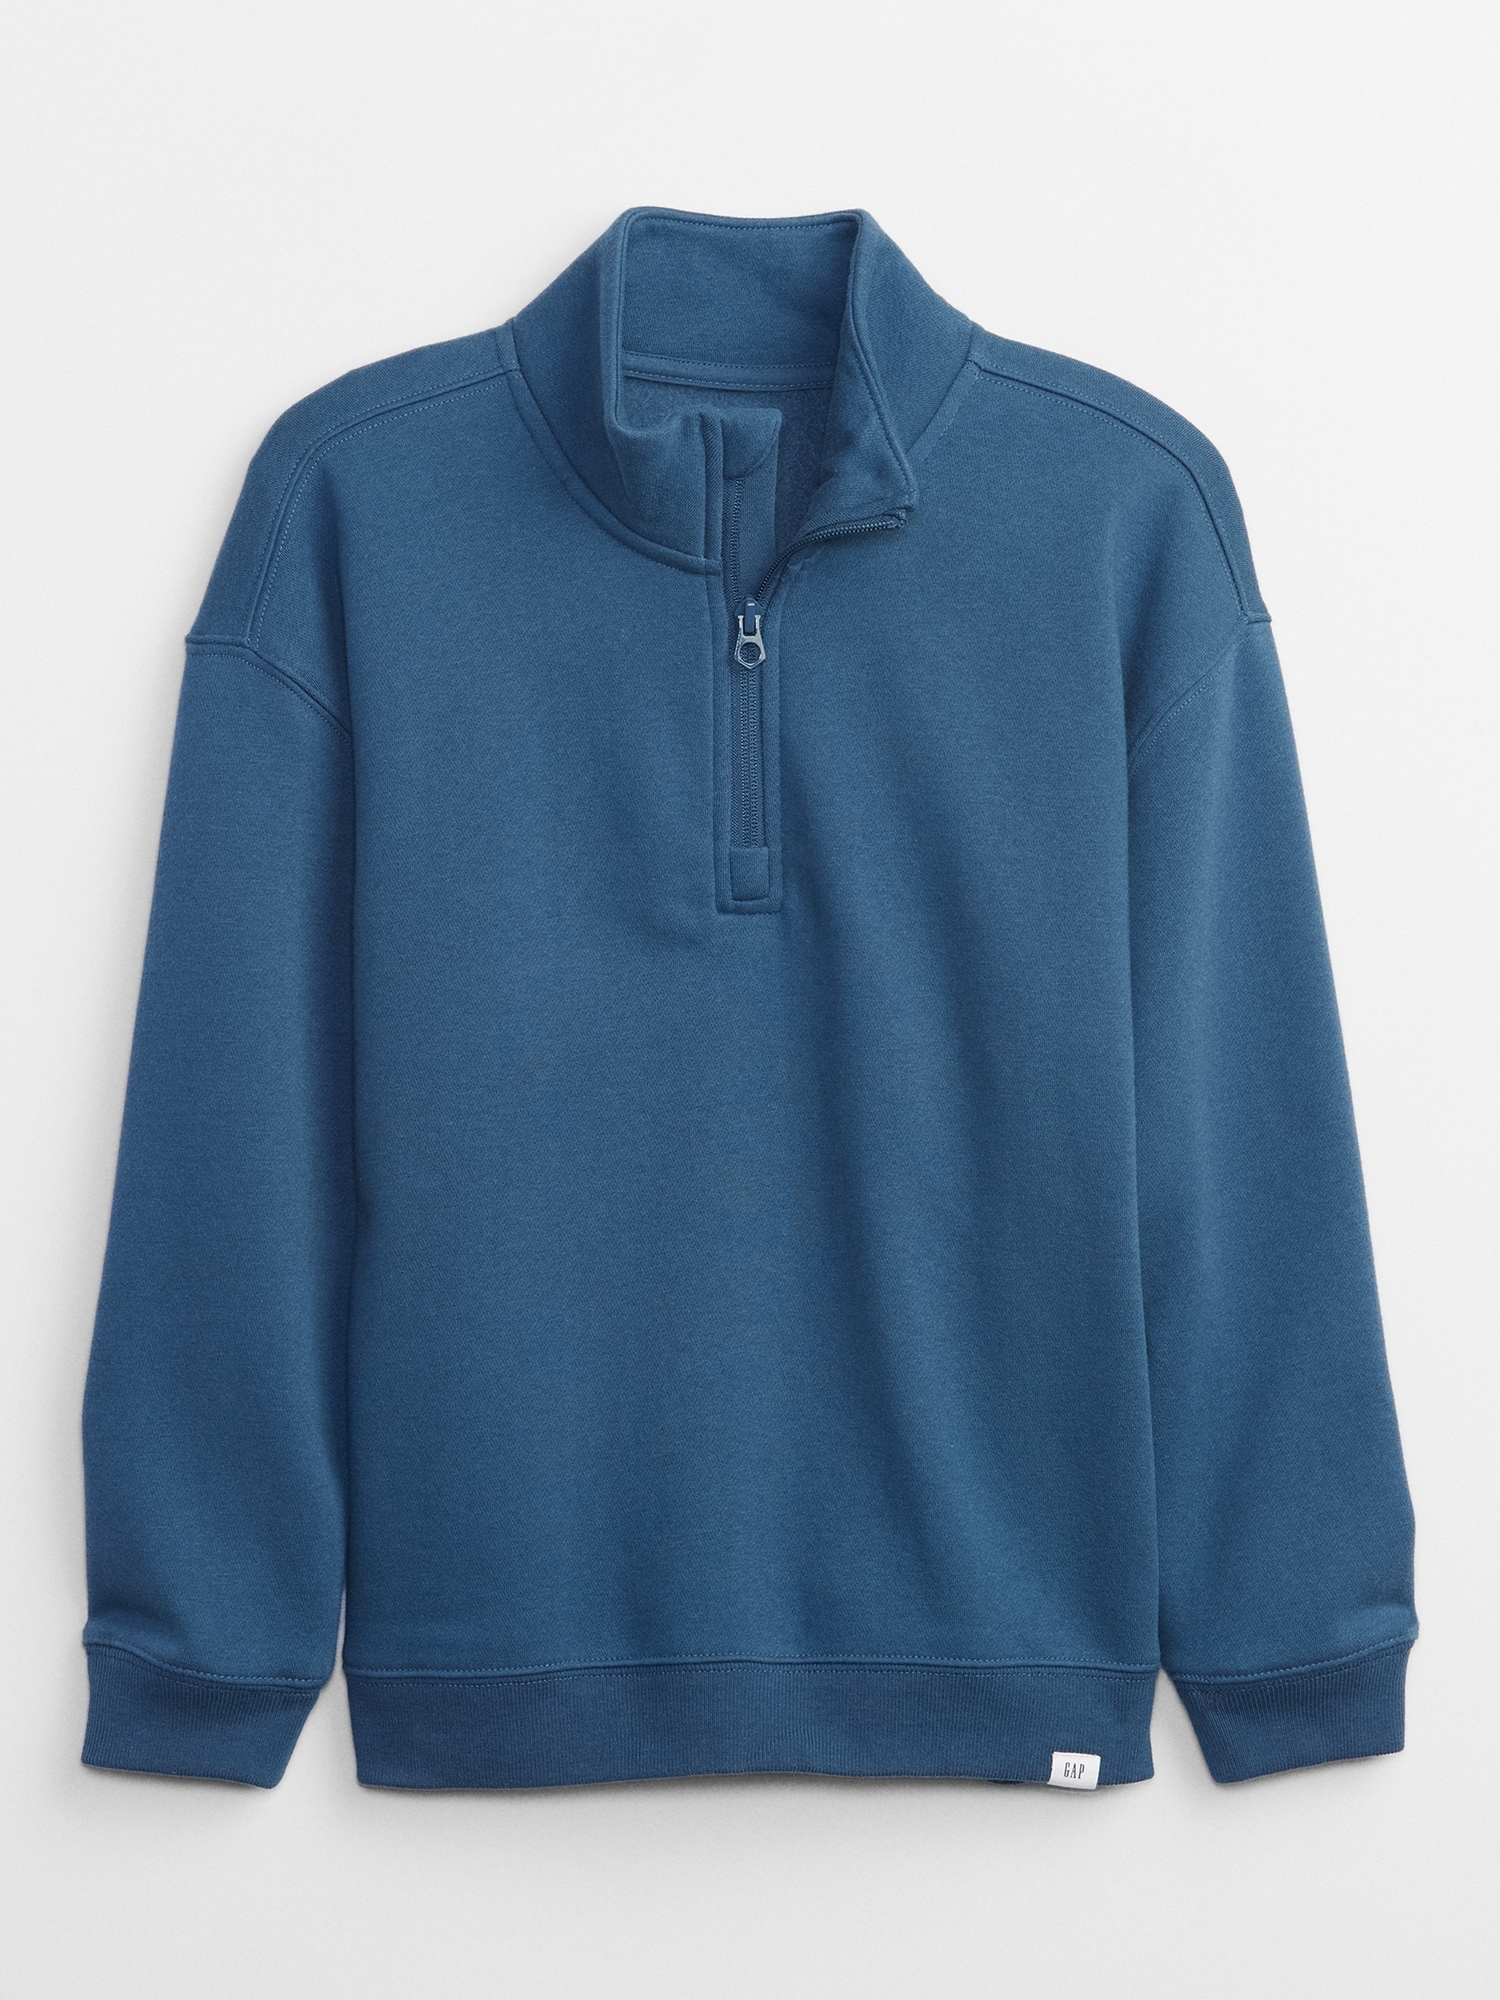 Kids Quarter-Zip Sweatshirt | Gap Factory